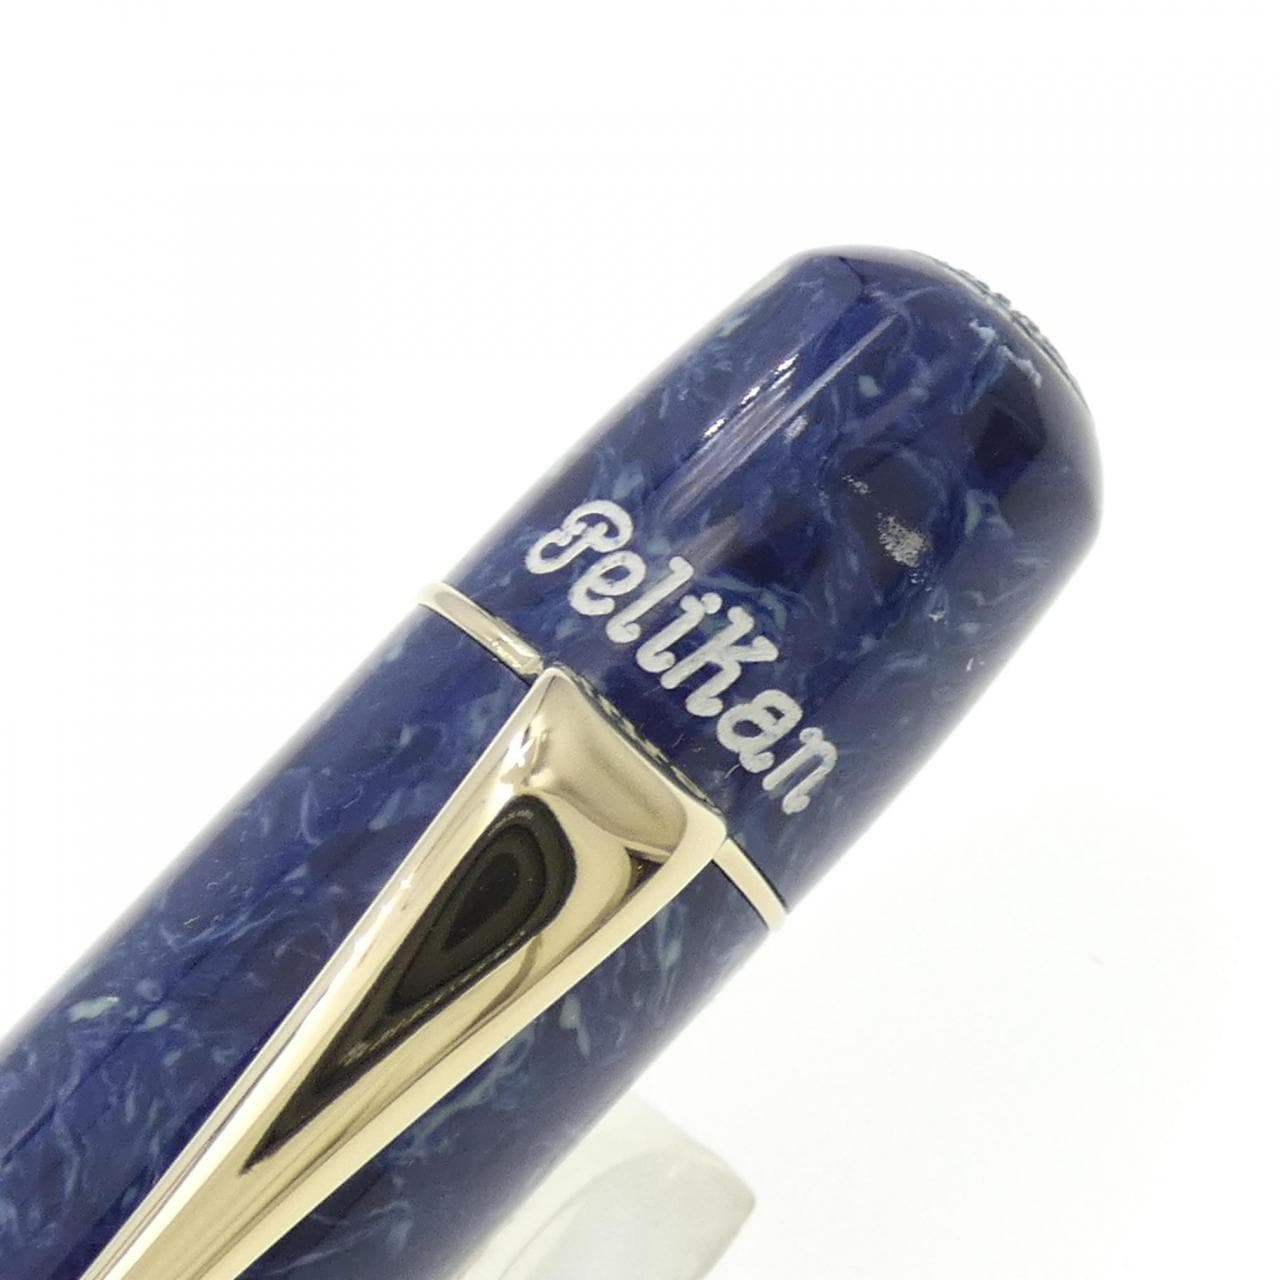 鵜鶘限量版1935藍色鋼筆